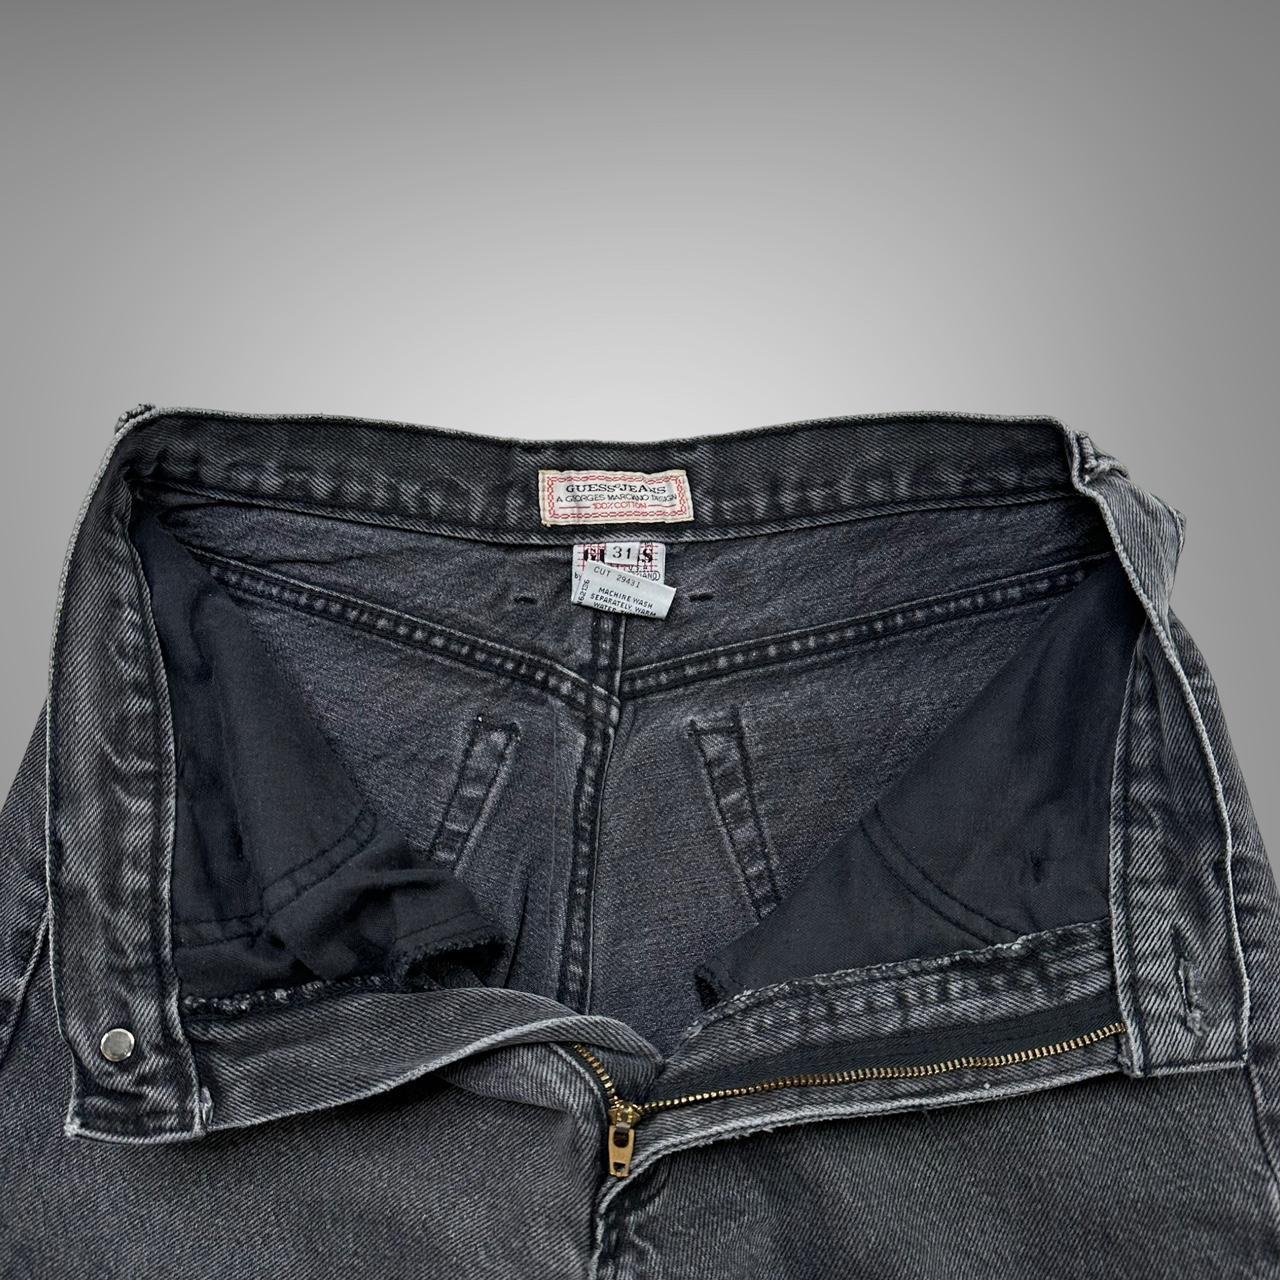 Vintage 1990s black guess jeans size fits a 28 waist... - Depop